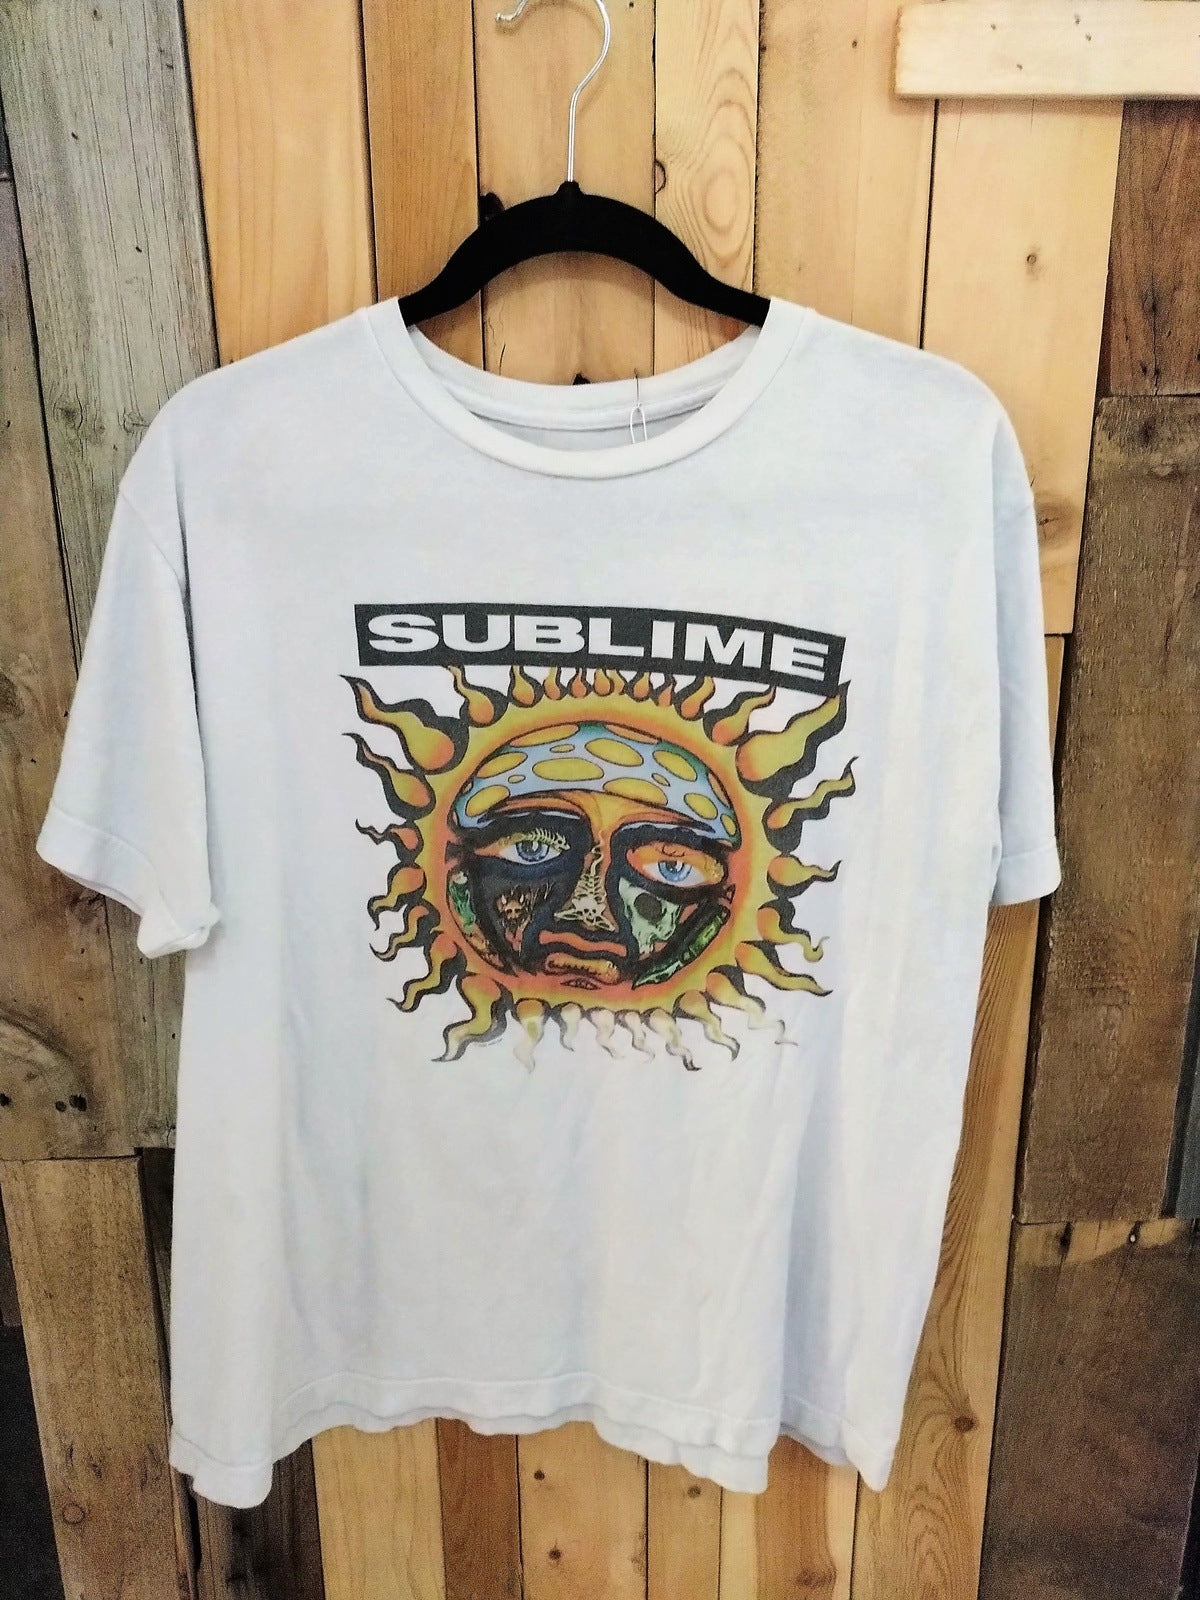 Sublime Official Merchandise T Shirt Size Large